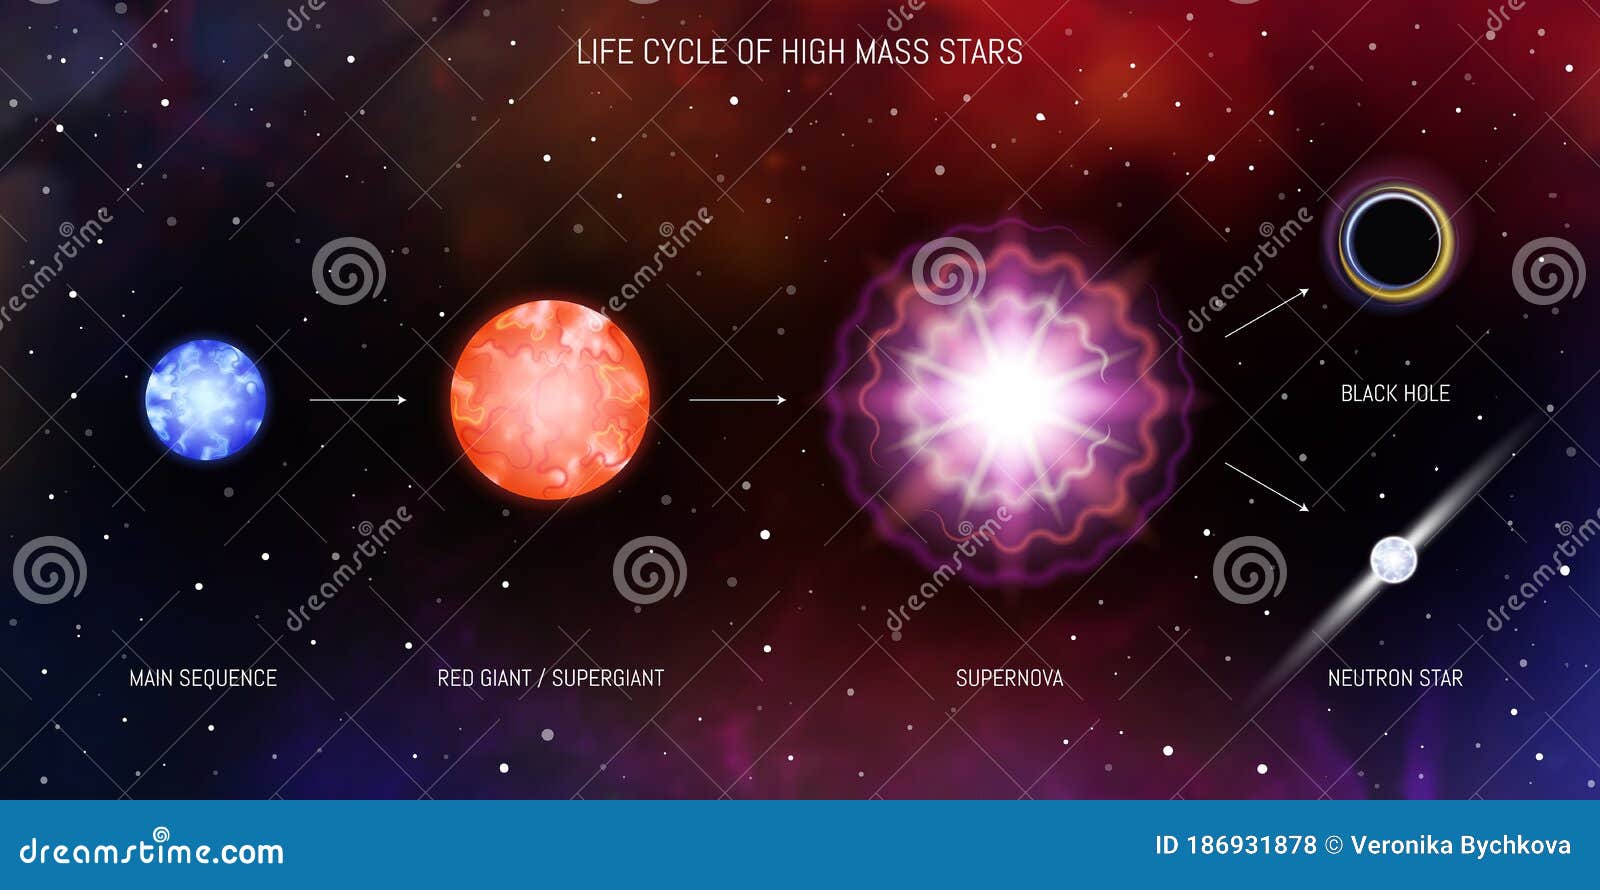 Финал эволюции звезды 7 букв. Космос звезды. Необычные звезды белые карлики нейтронные звезды. Нейтронные звезды это в астрономии. Звезда Бетельгейзе нейтронная.